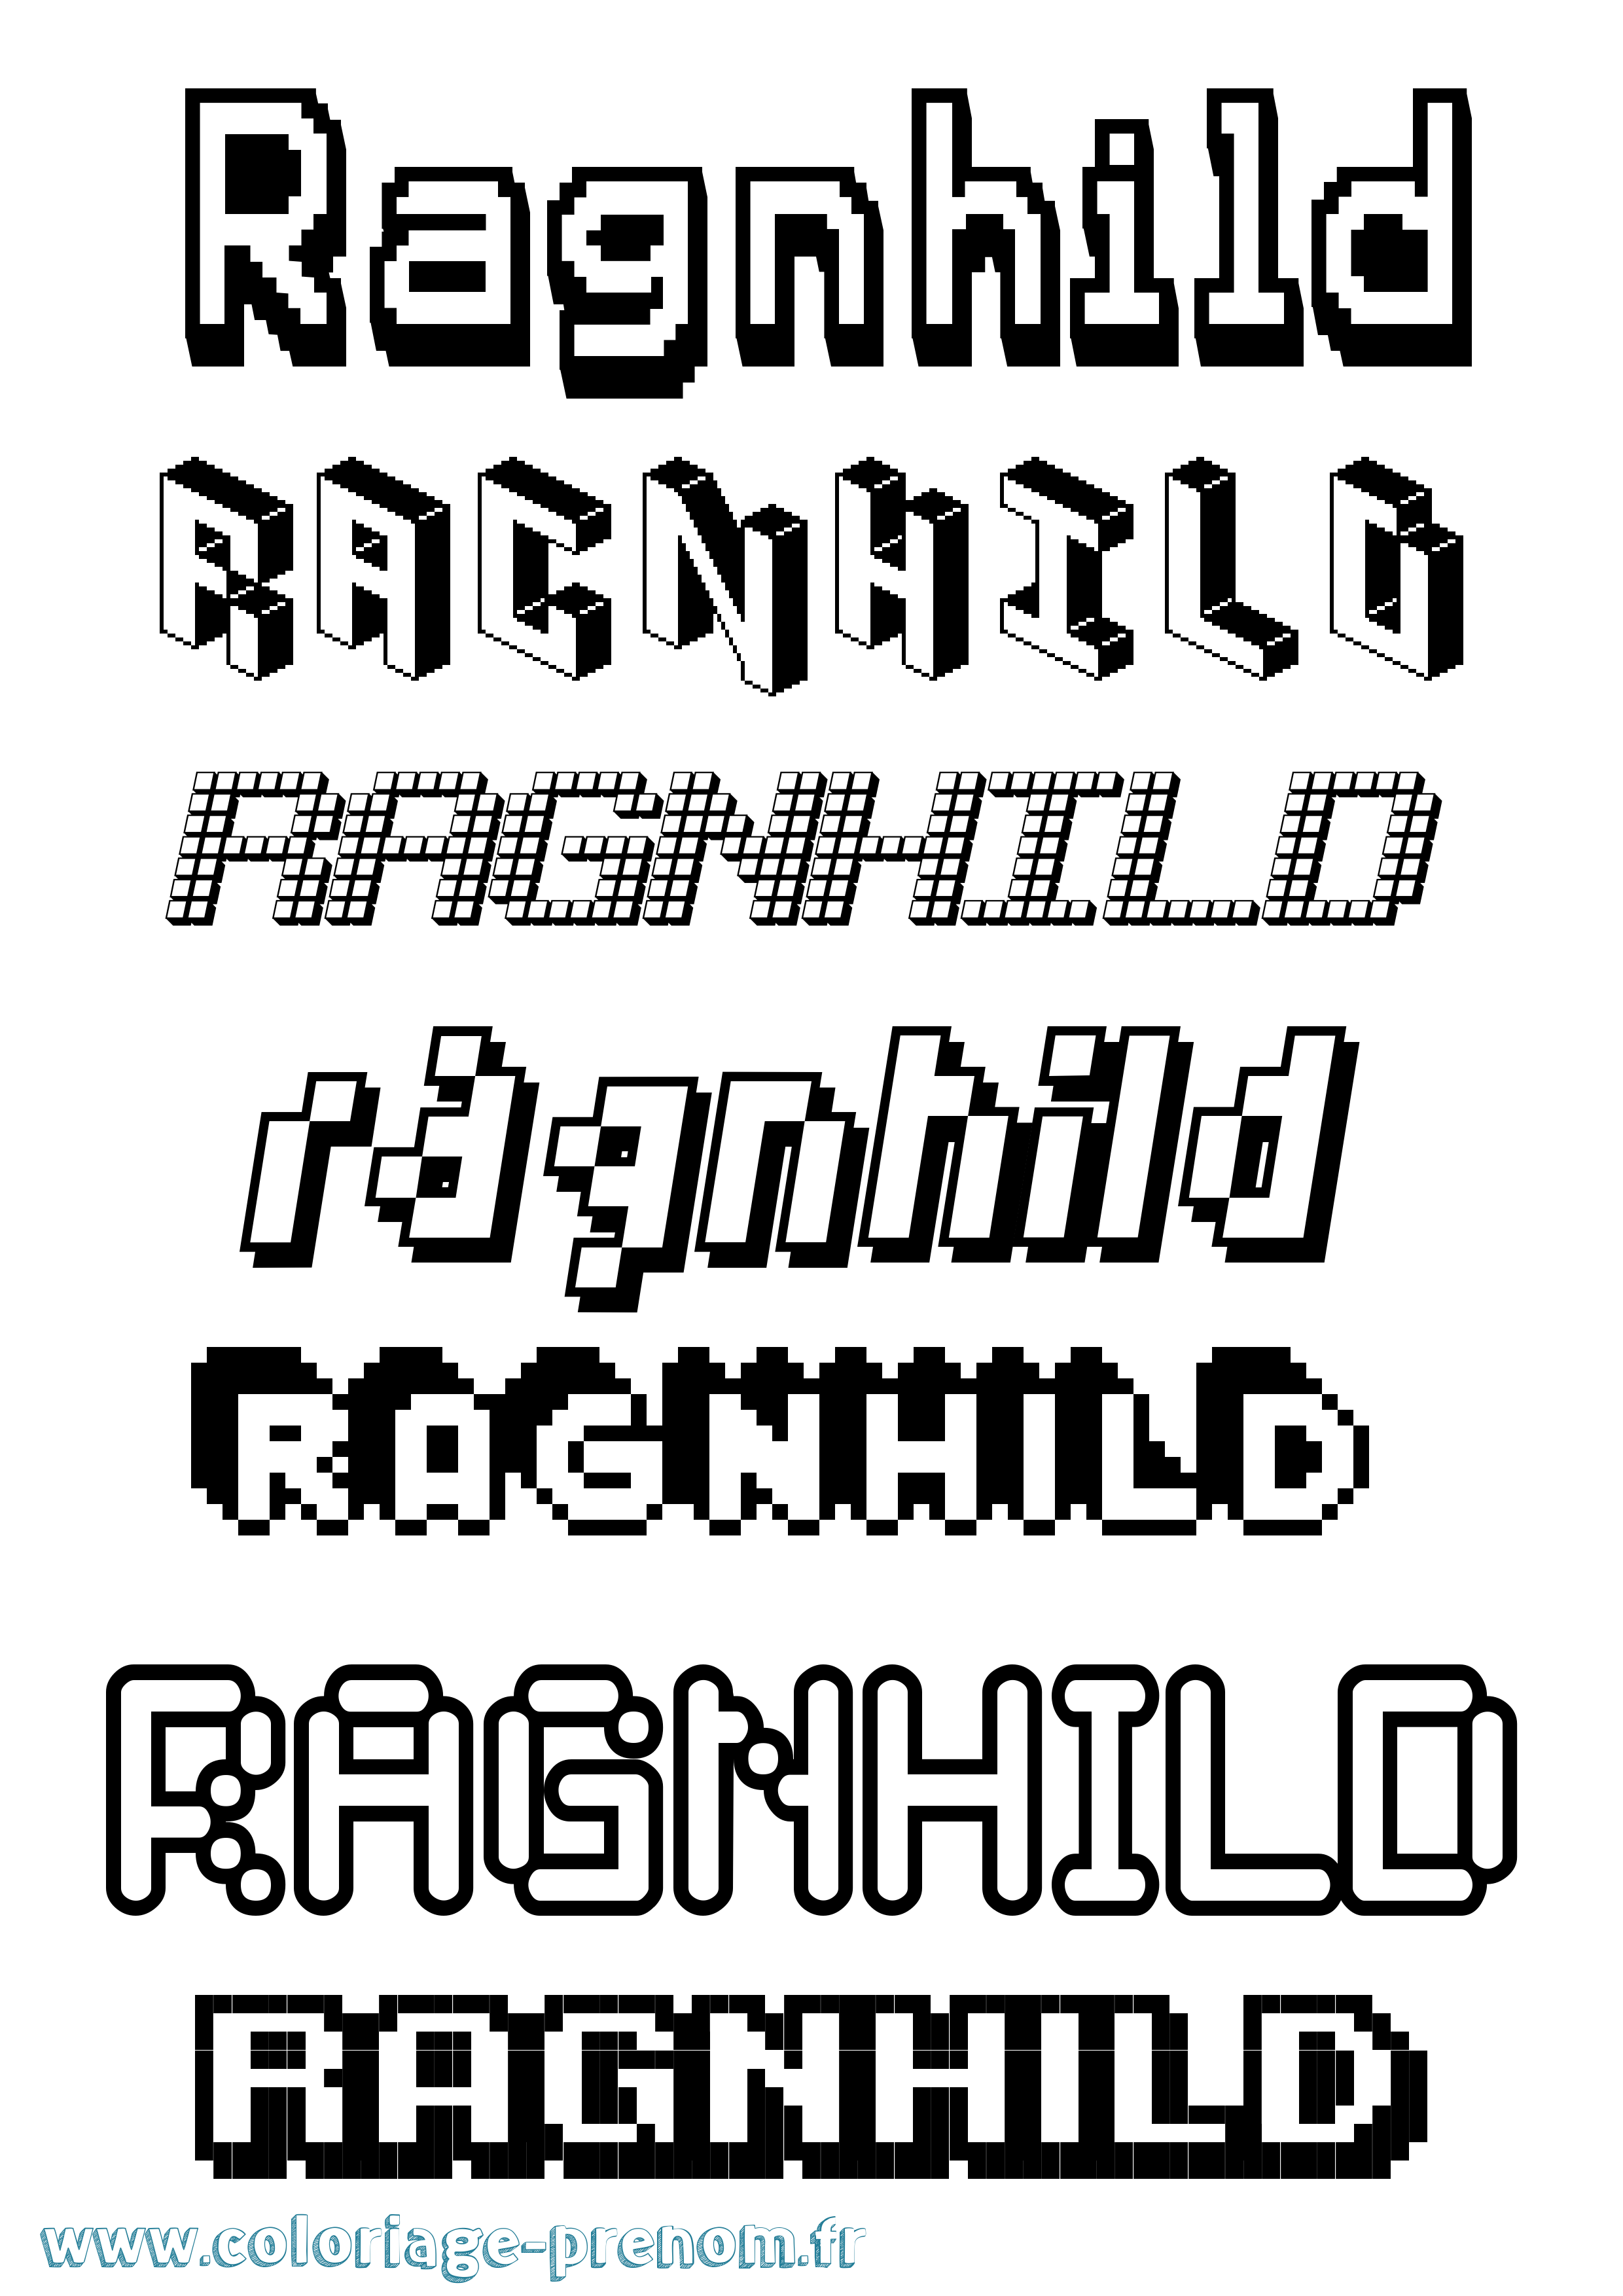 Coloriage prénom Ragnhild Pixel